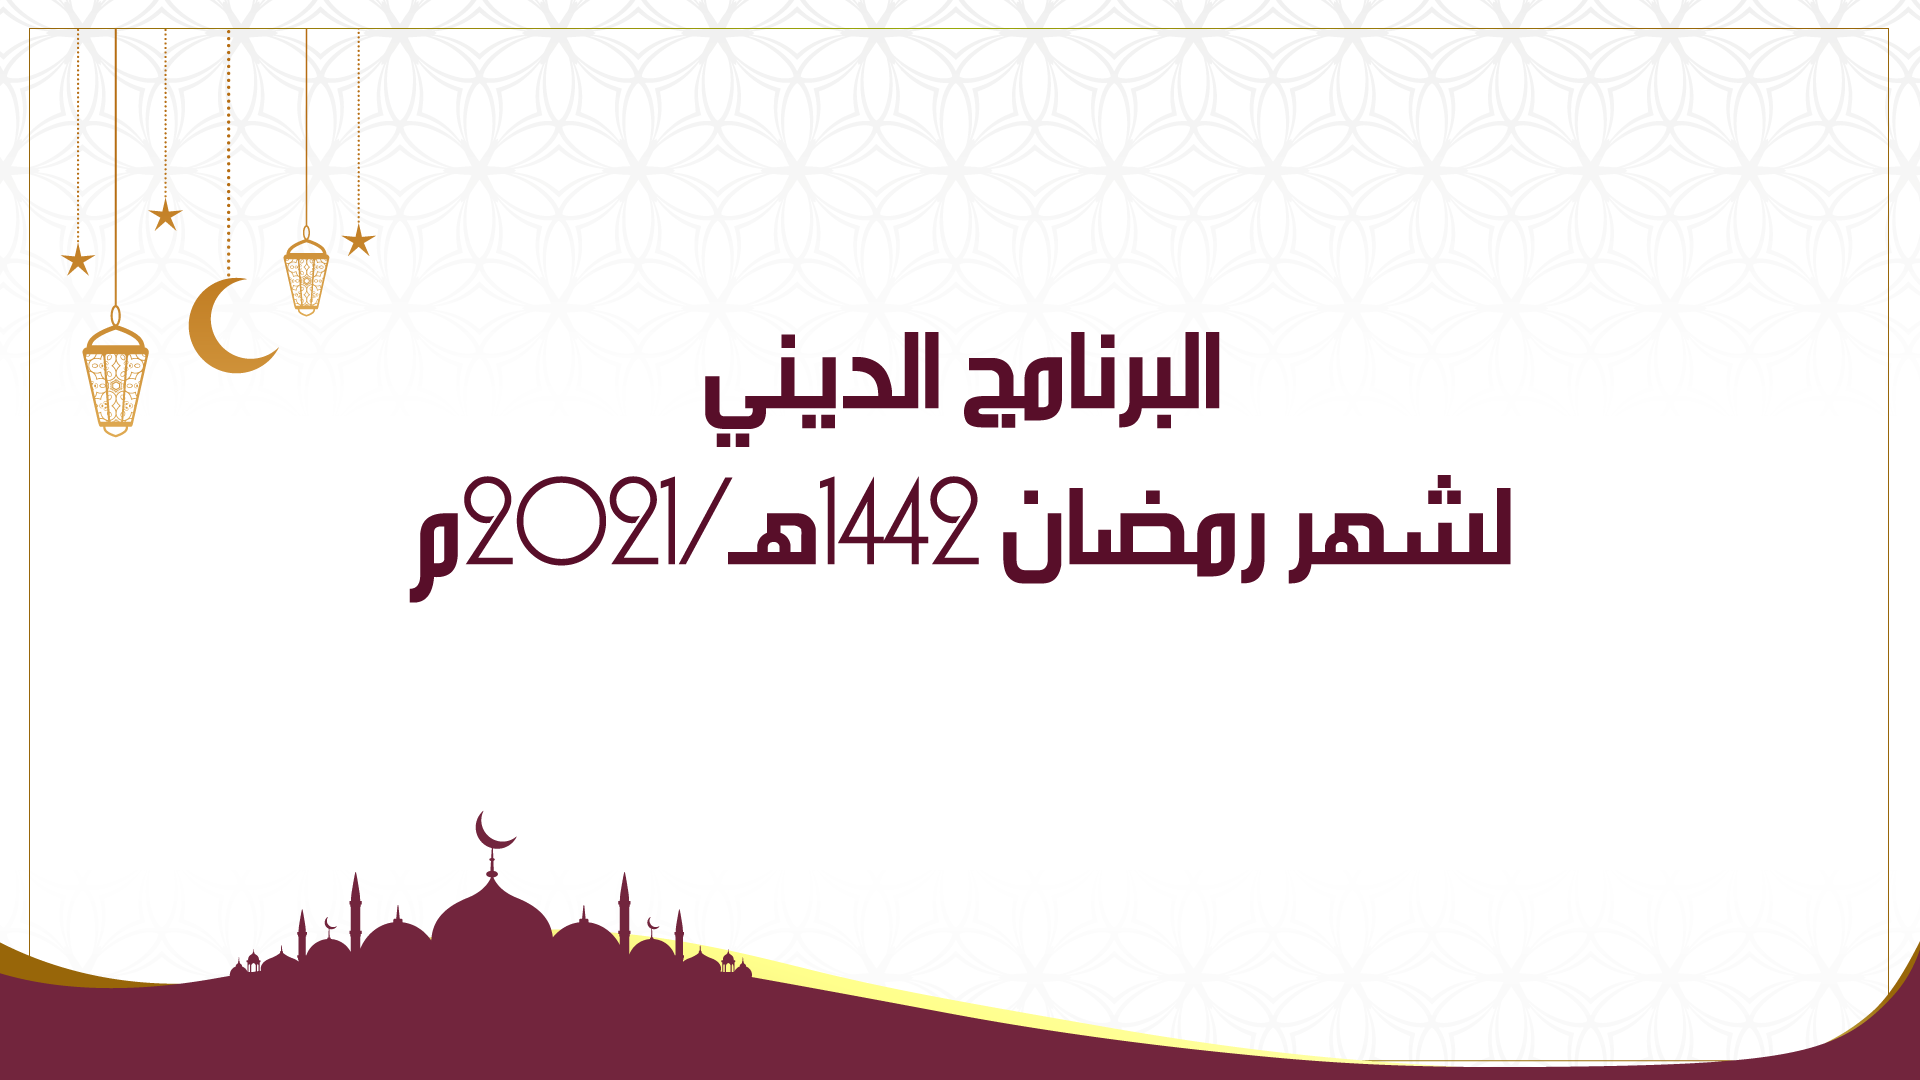 البرنامج الديني لشهر رمضان 1442هـ/2021م